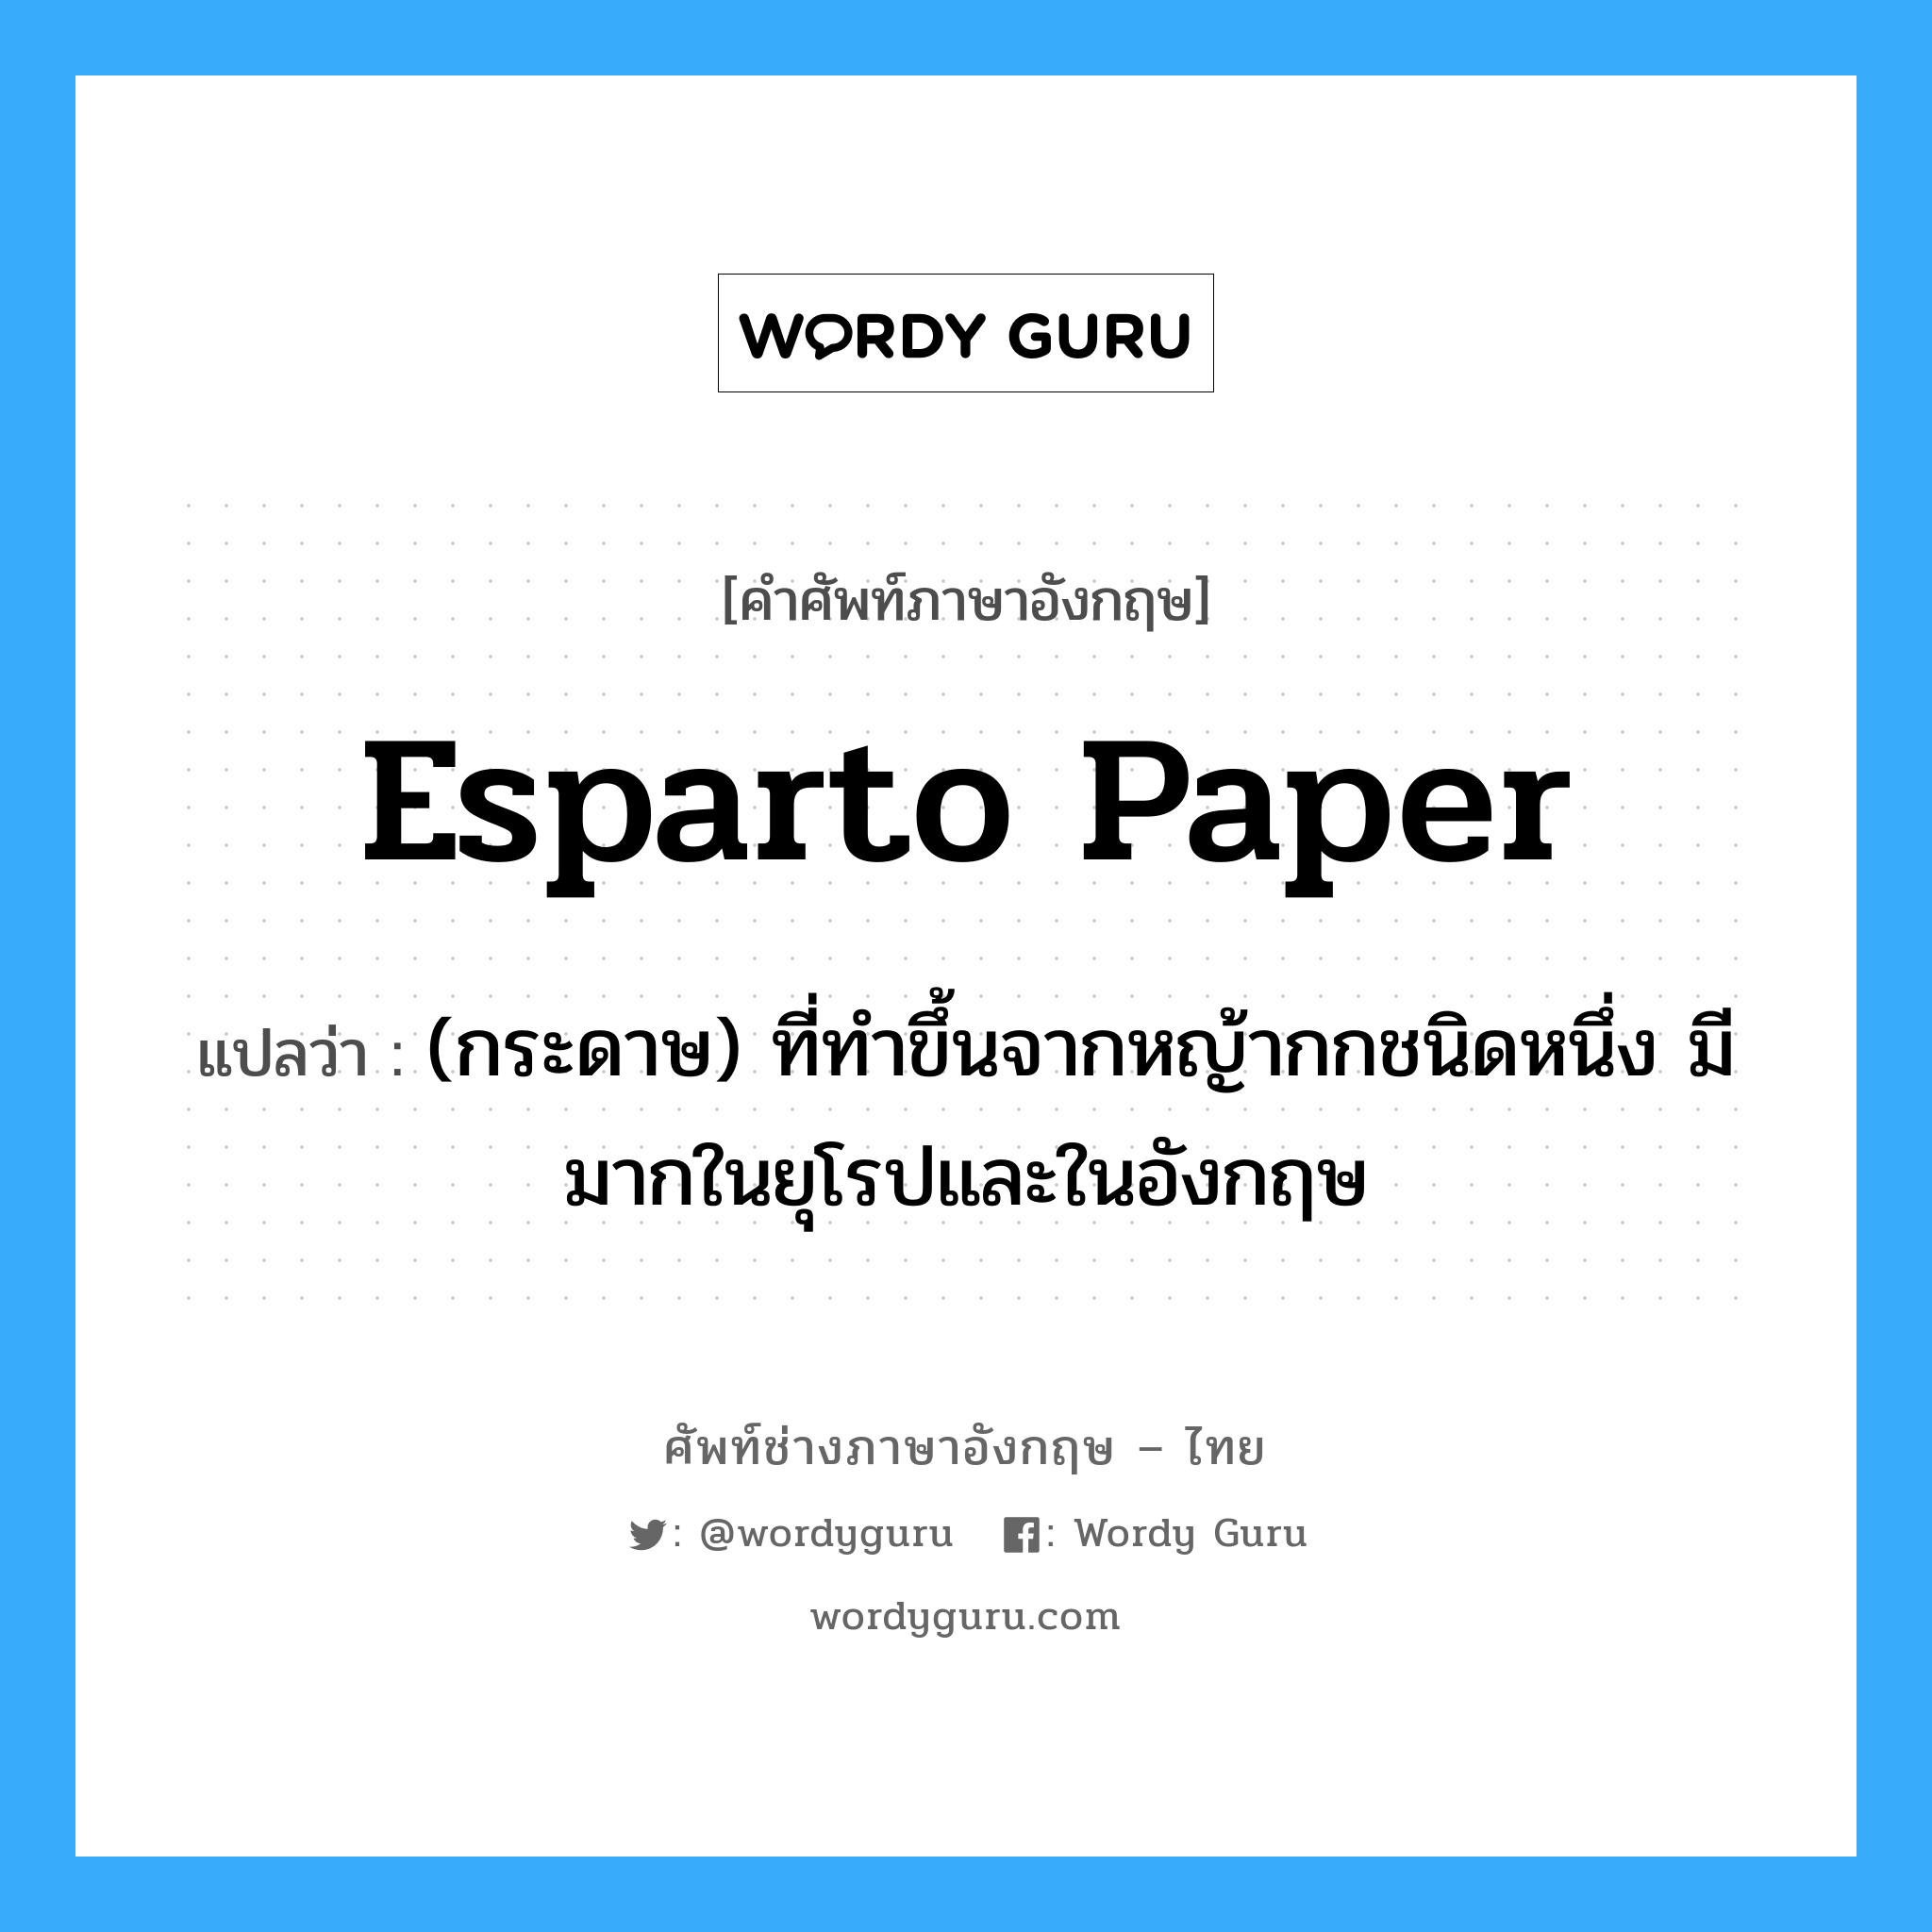 esparto paper แปลว่า?, คำศัพท์ช่างภาษาอังกฤษ - ไทย esparto paper คำศัพท์ภาษาอังกฤษ esparto paper แปลว่า (กระดาษ) ที่ทำขึ้นจากหญ้ากกชนิดหนึ่ง มีมากในยุโรปและในอังกฤษ